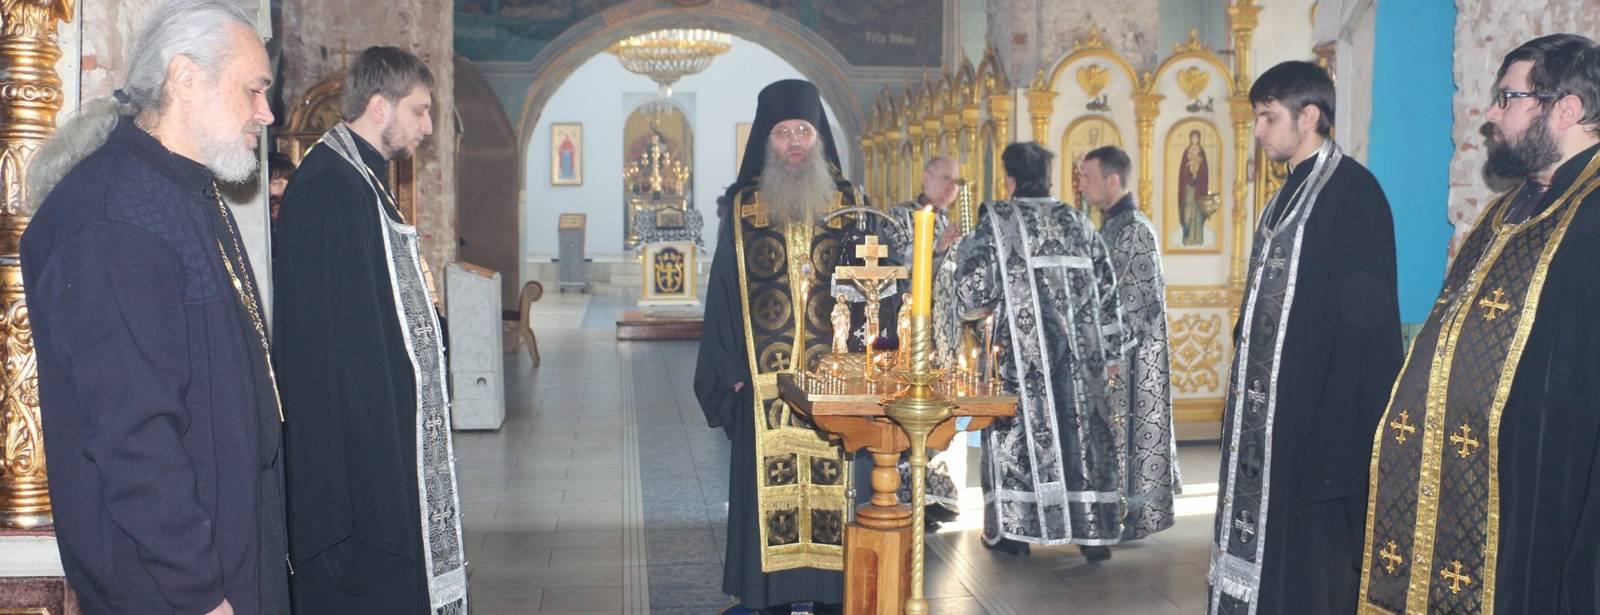 Епископ Елисей совершил заупокойную литию по погибшим прихожанам в Георгиевском соборе Кизляра.